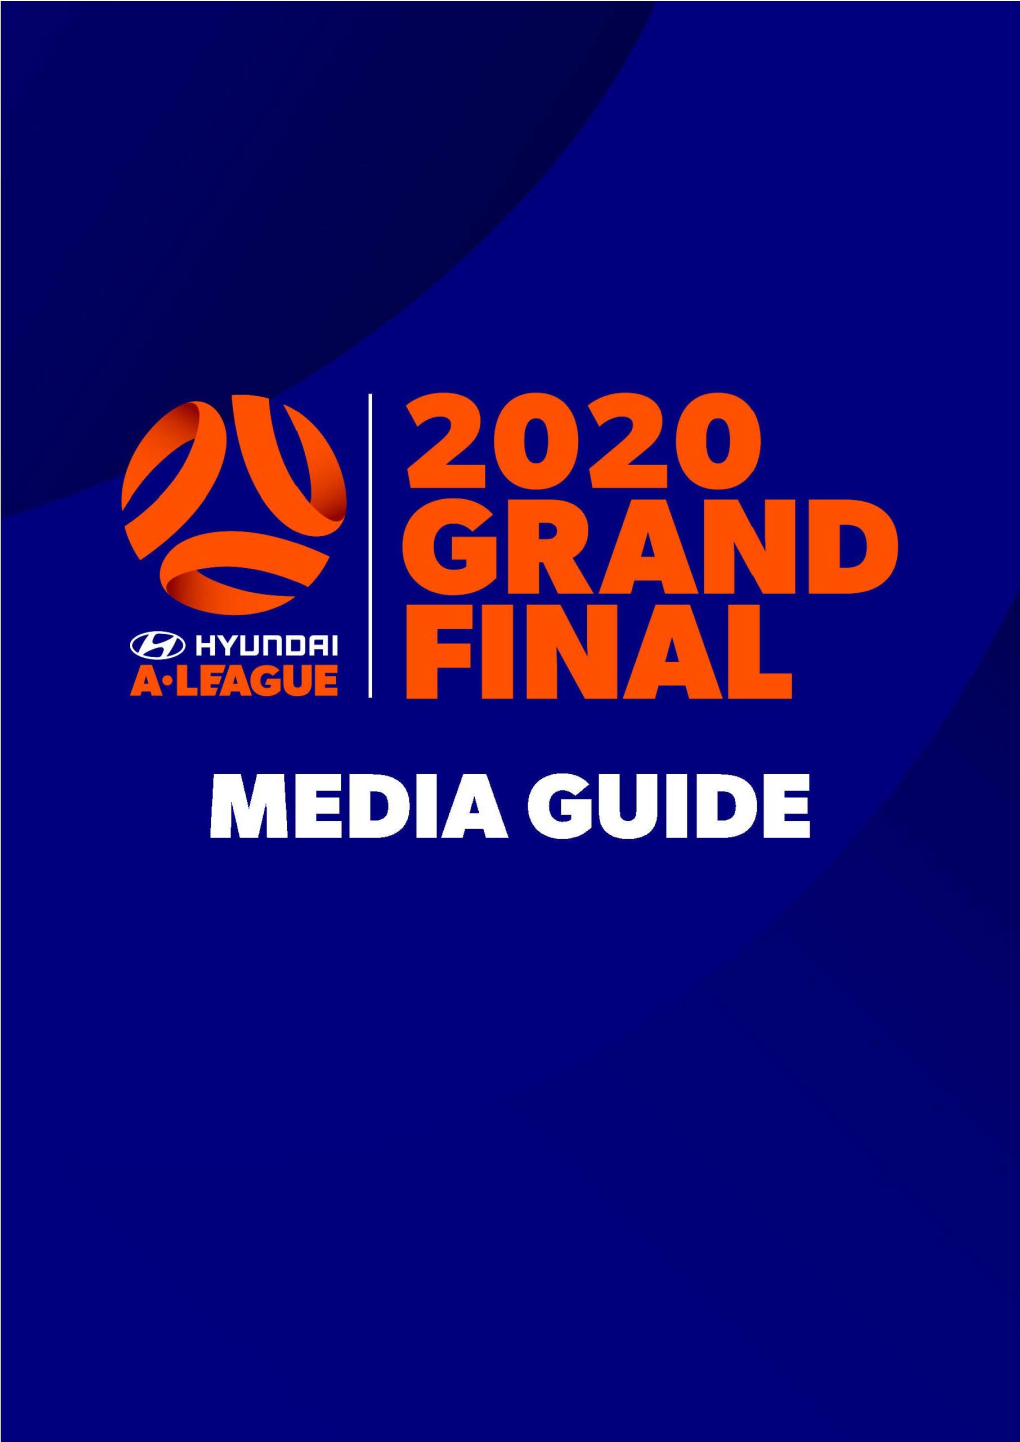 Hyundai A-League 2020 Grand